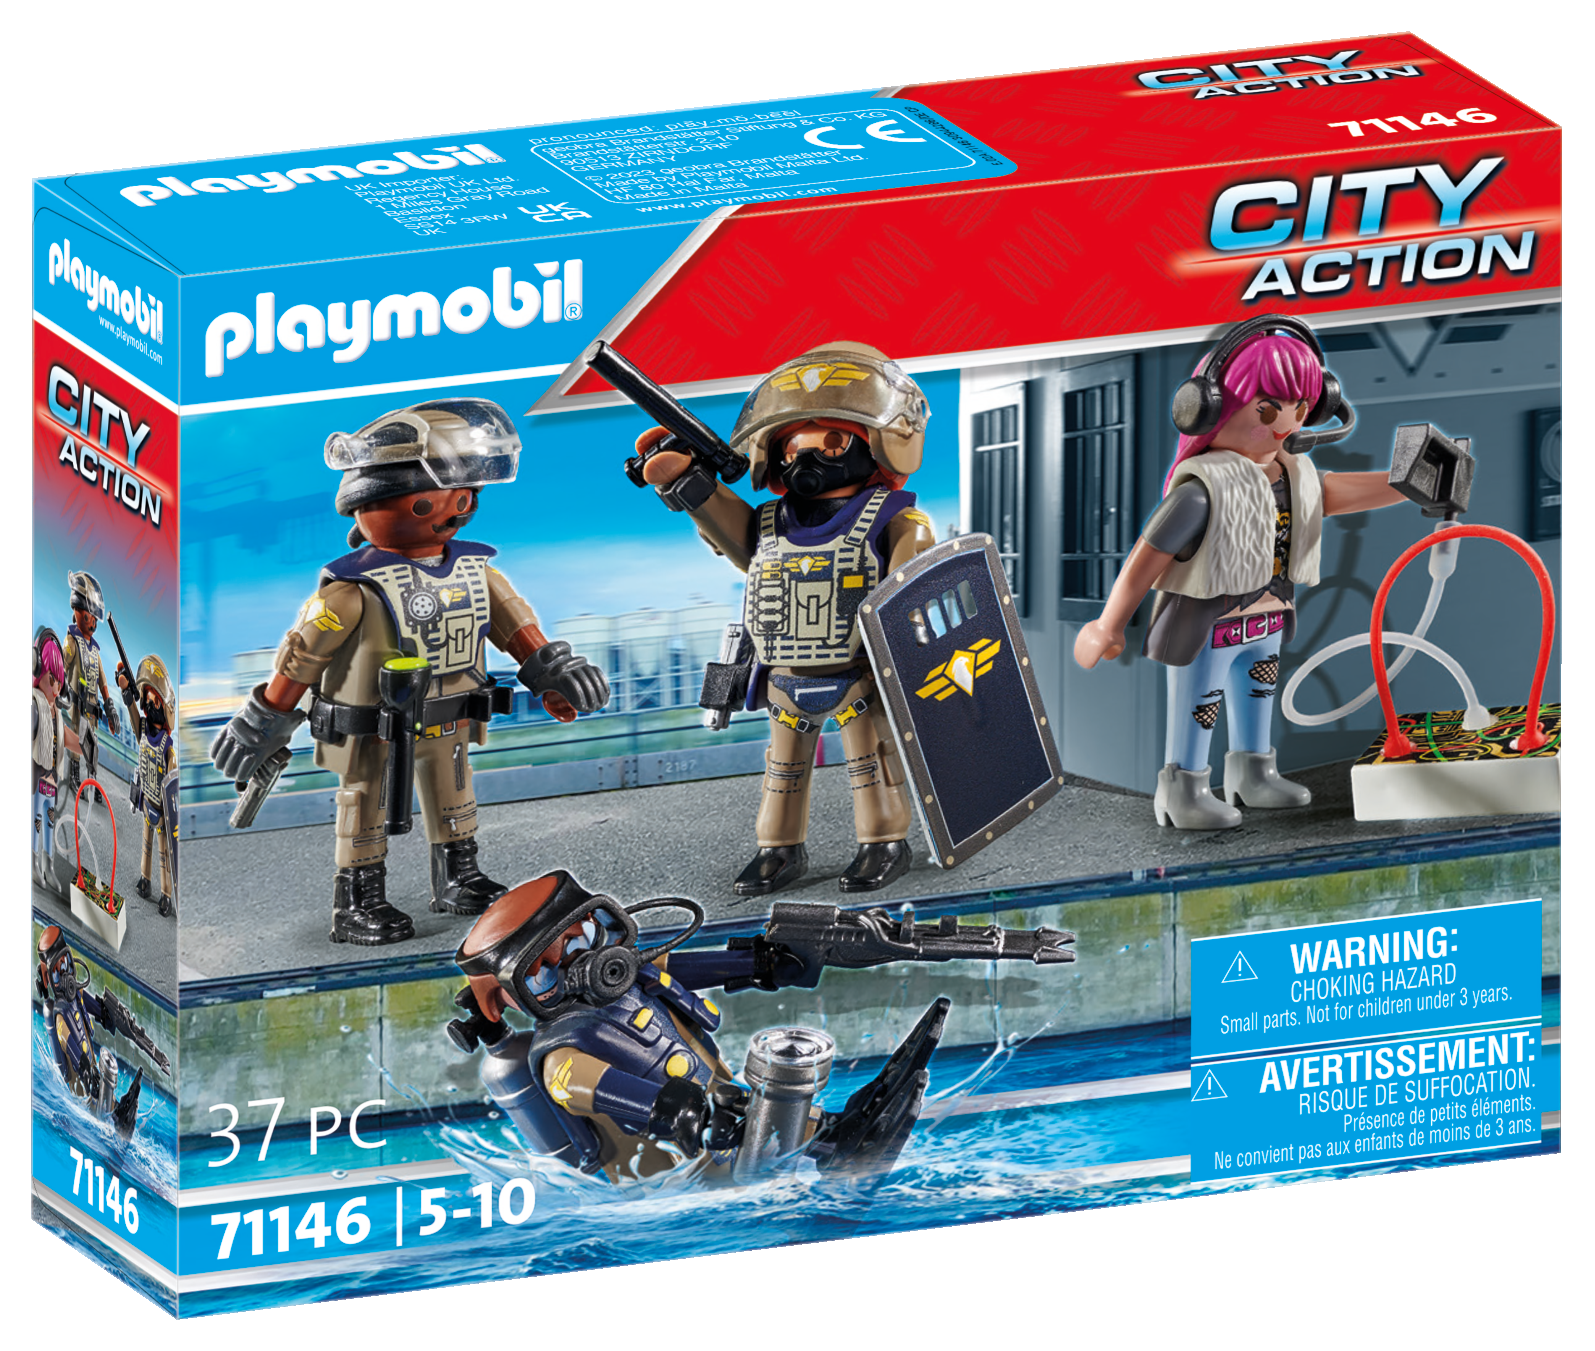 Playmobil 71146 unita' speciale - set 4 personaggi per bambini dai 5 anni - Playmobil